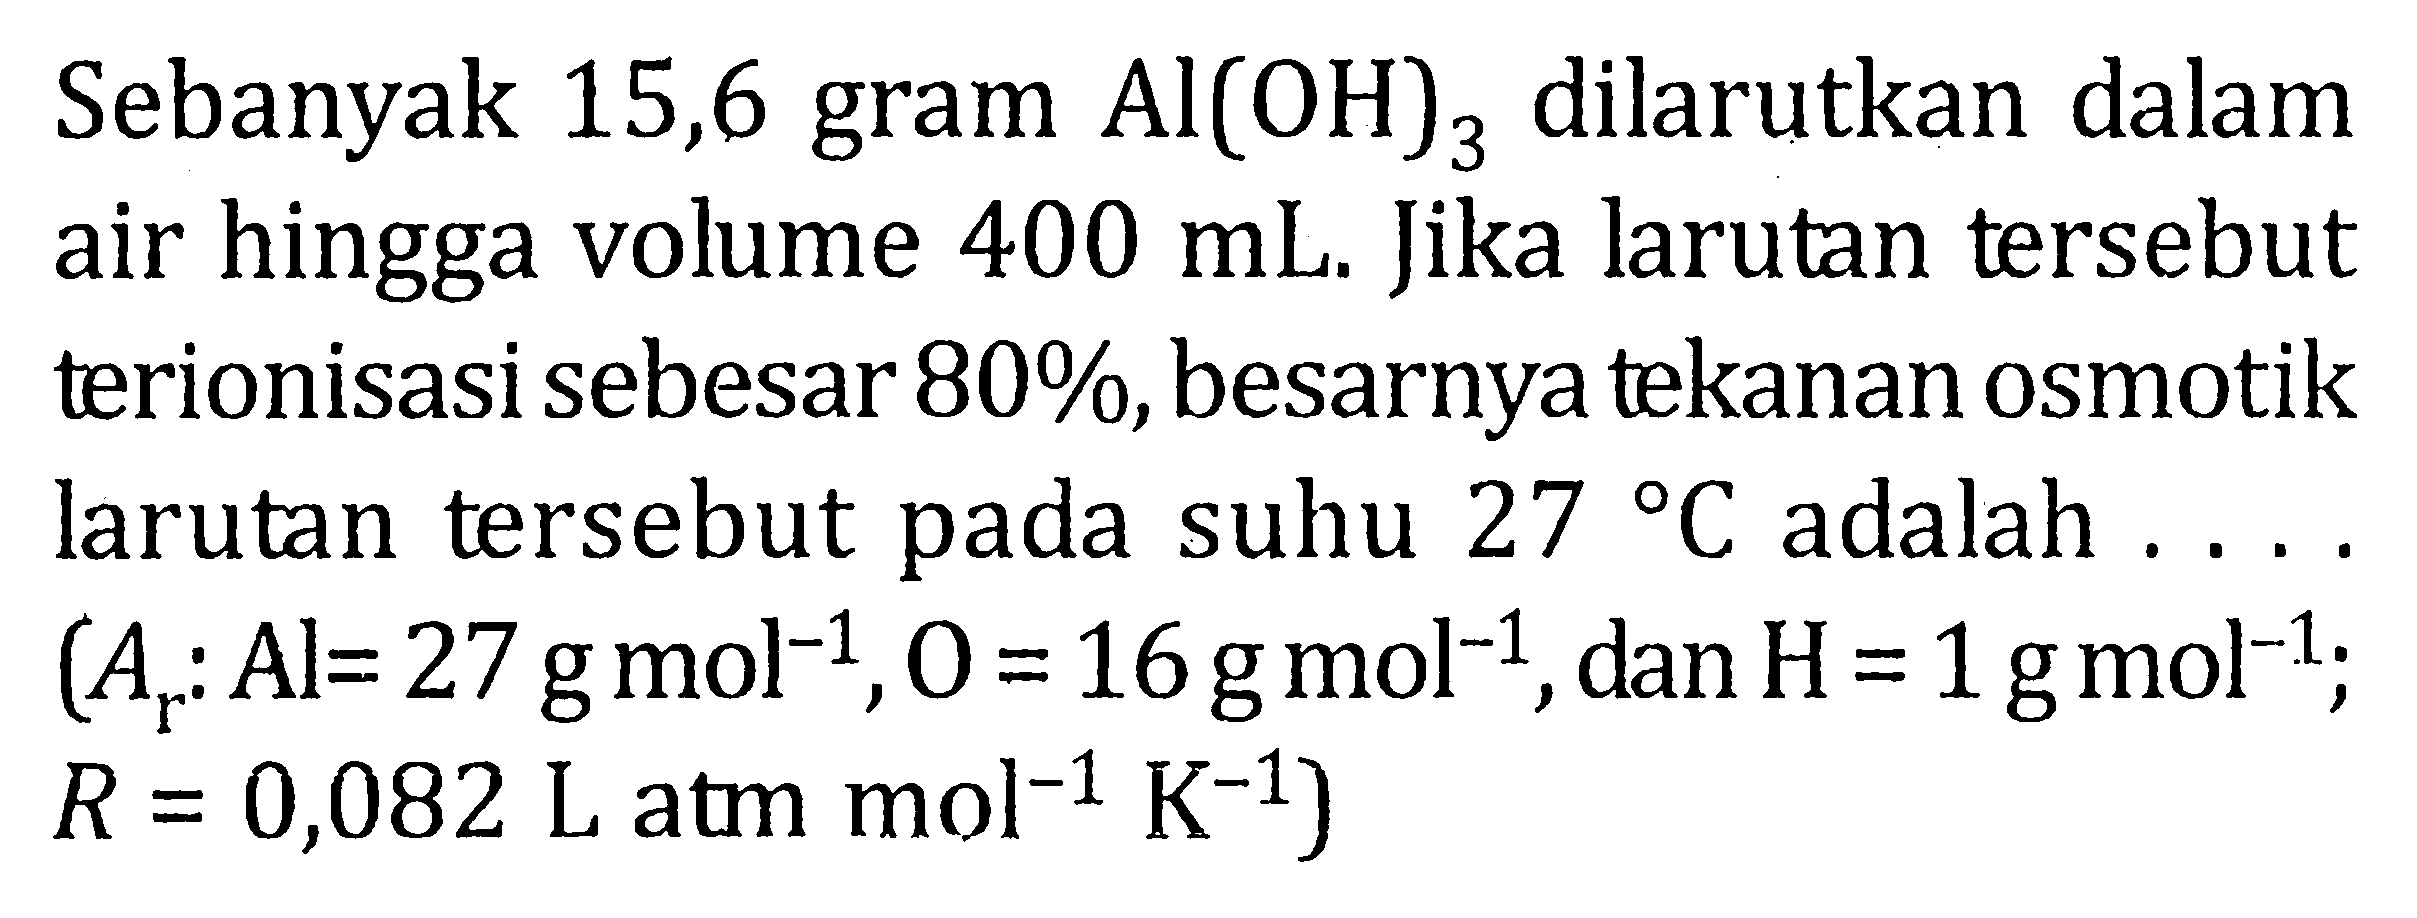 Sebanyak 15,6 gram Al(OH)3 dilarutkan dalam air hingga volume 400 mL. Jika larutan tersebut terionisasi sebesar 80%, besarnya tekanan osmotik larutan tersebut pada suhu 27 C adalah .... (Ar : Al = 27 g mol^-1, O = 16 g mol^-1, dan H = 1 g mol^-1; R = 0,082 L atm mol^-1 K^-1)